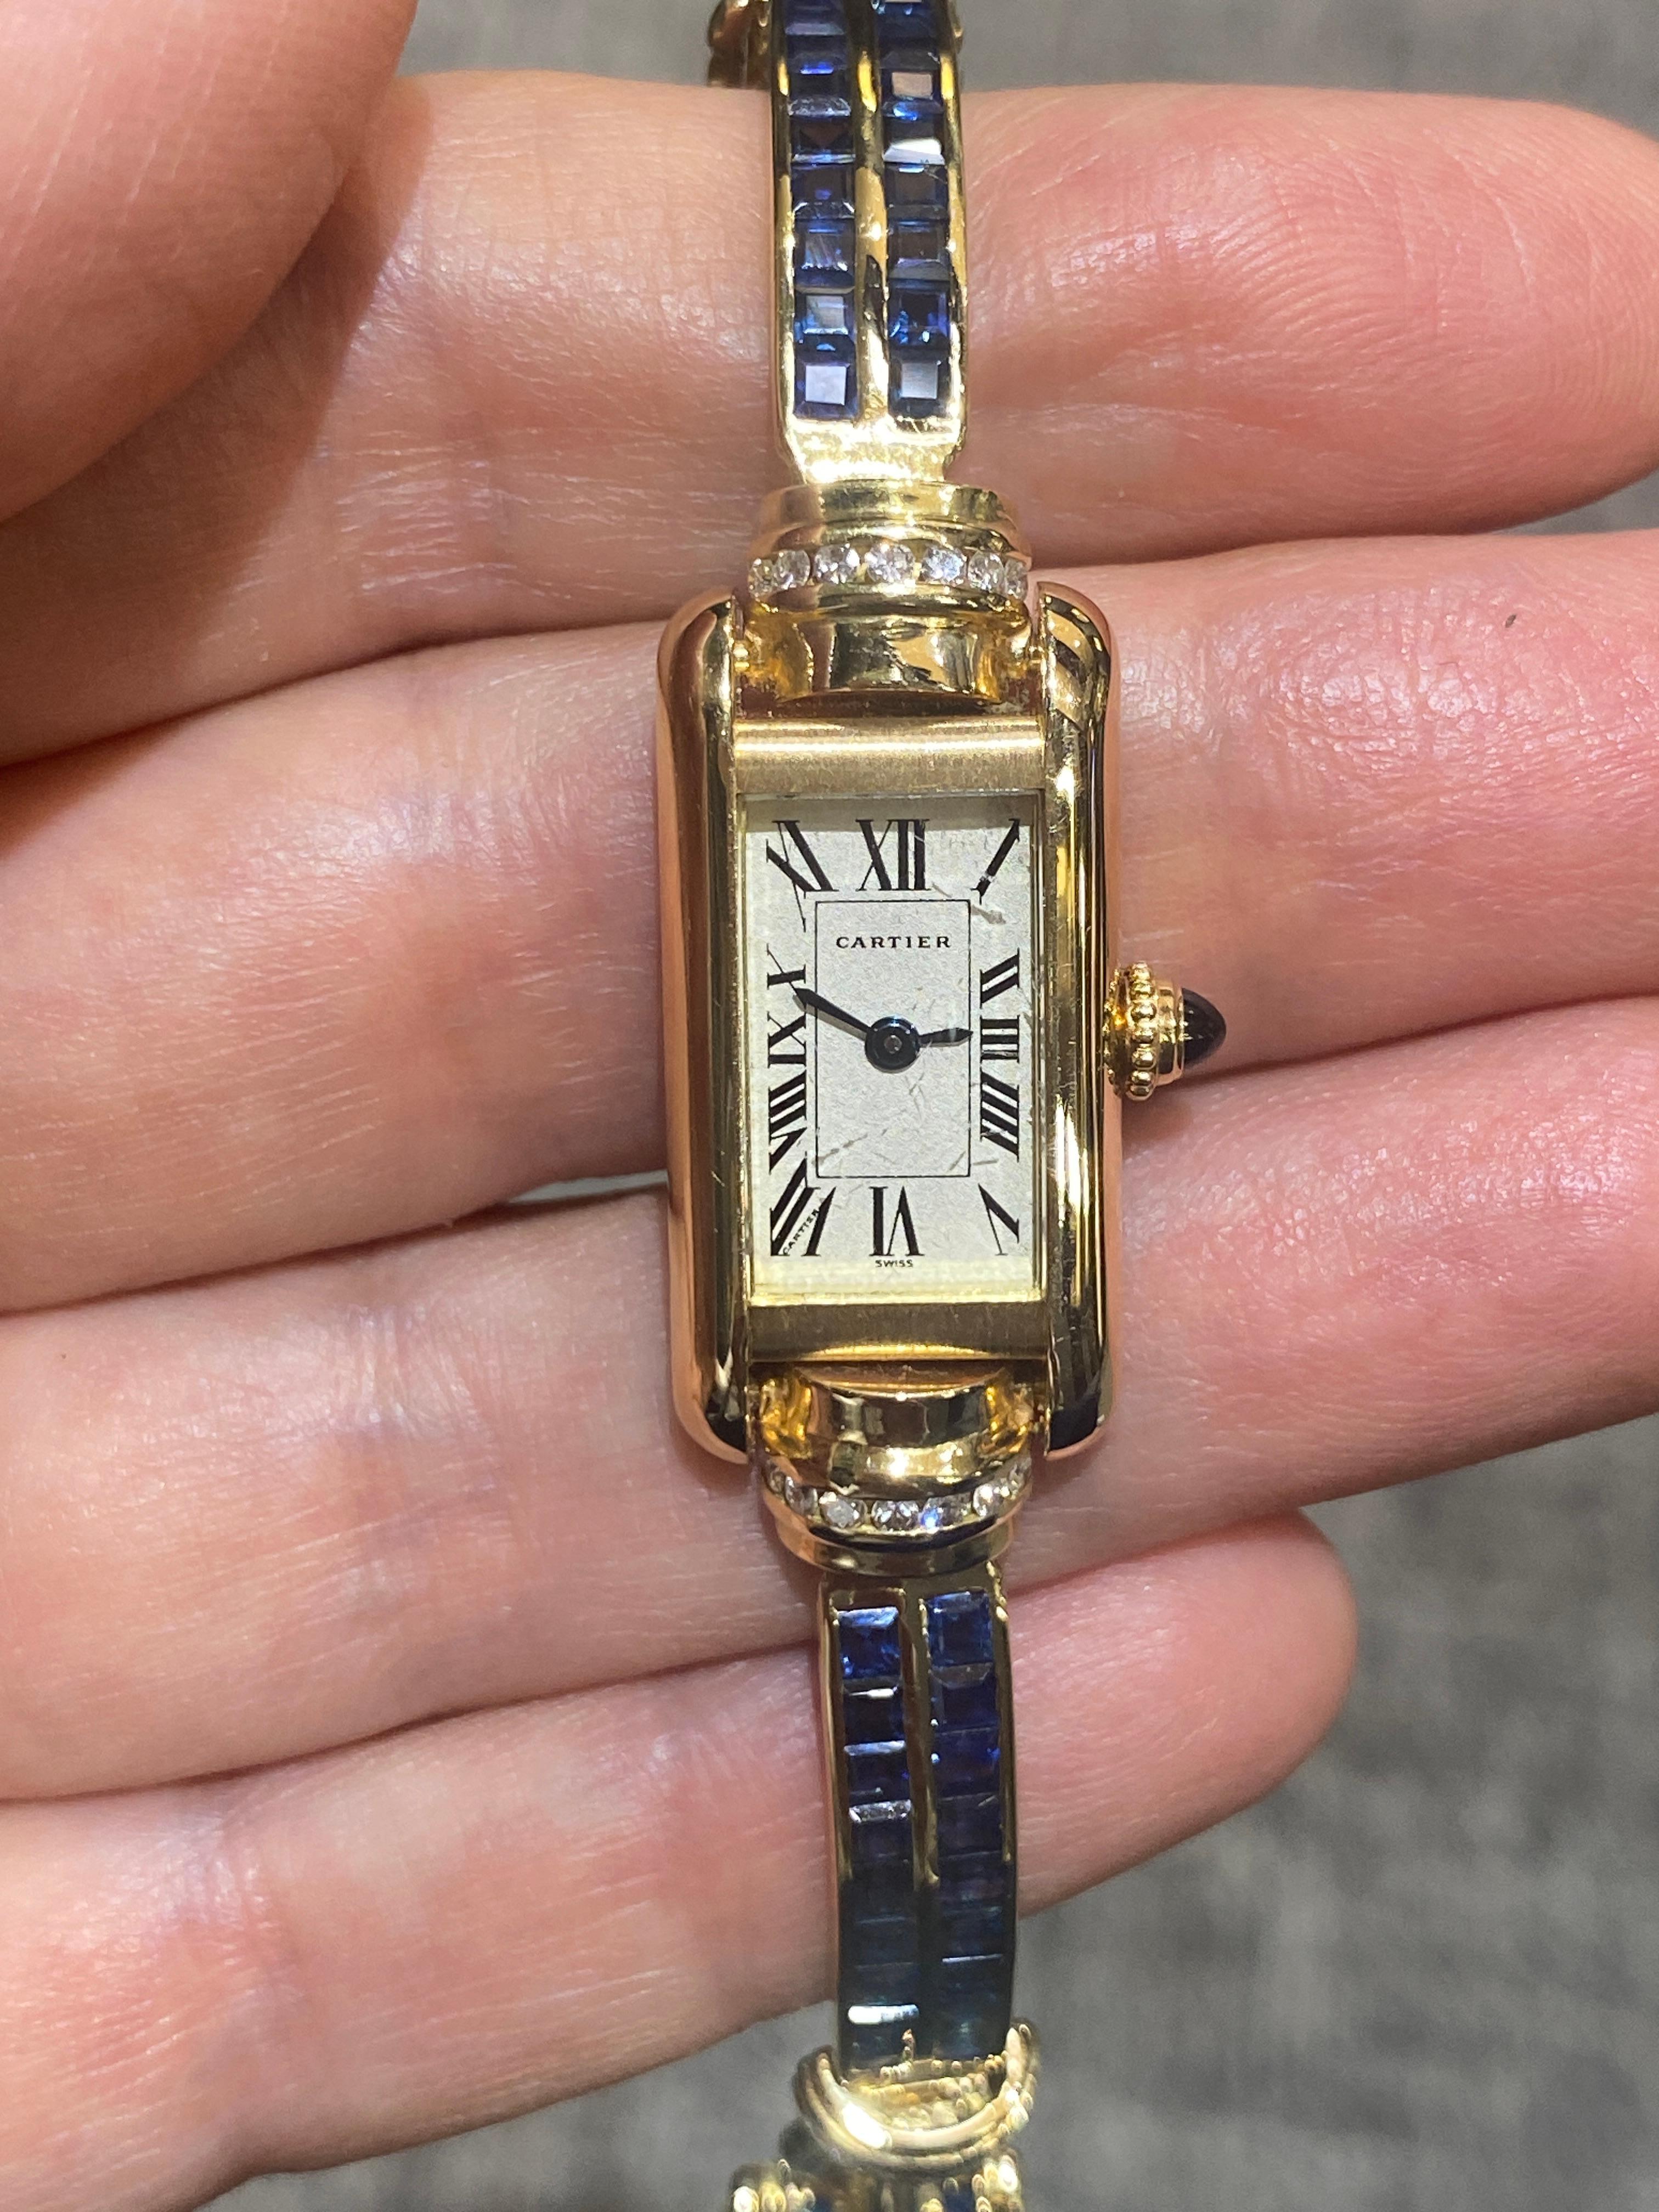 Cette rare montre Tank de Cartier possède un bracelet en or 18 carats orné de diamants de taille ronde et de saphirs en serti invisible. La longueur du bracelet est de 17 cm. Il s'agit d'une pièce étonnante.